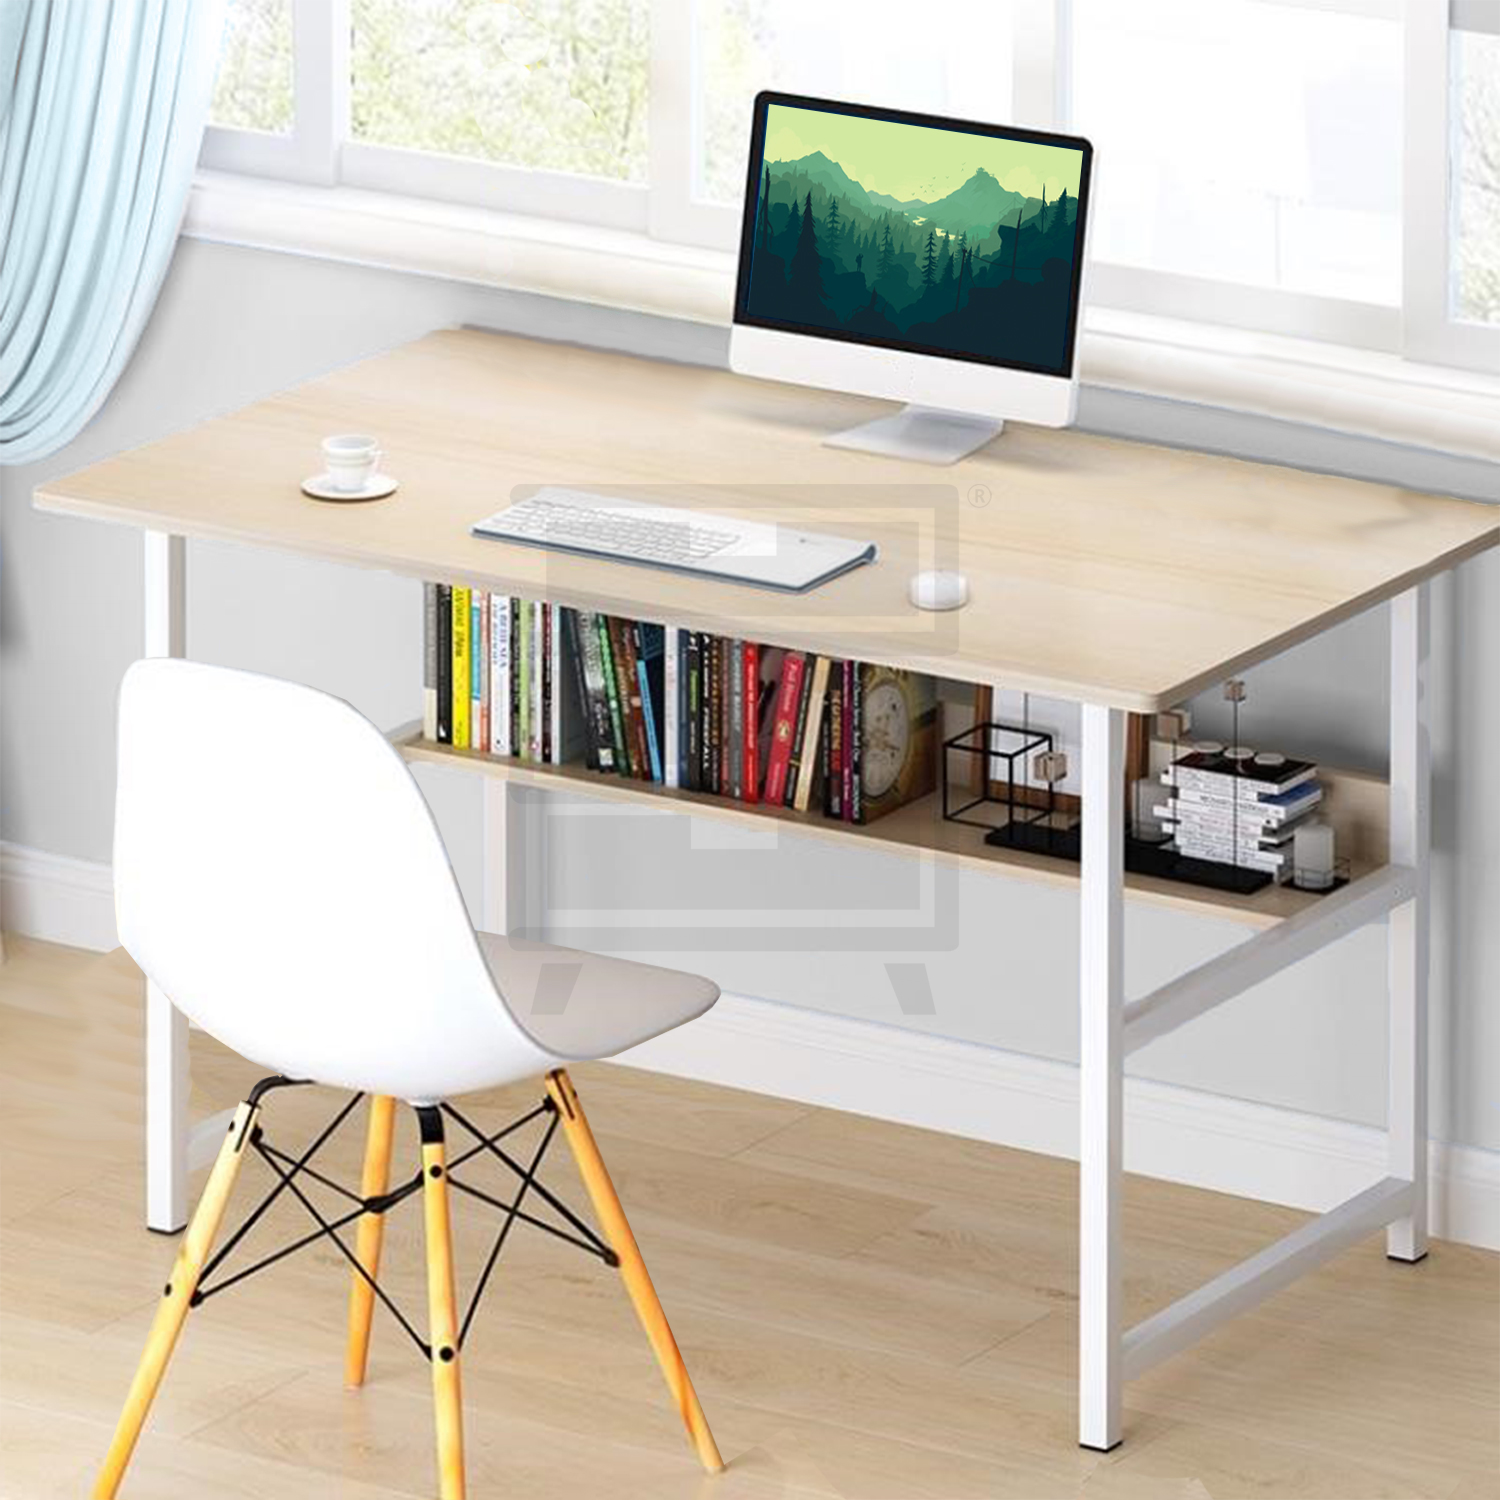 Furniture Source Philippines | Scandi Work Desk with Shelf